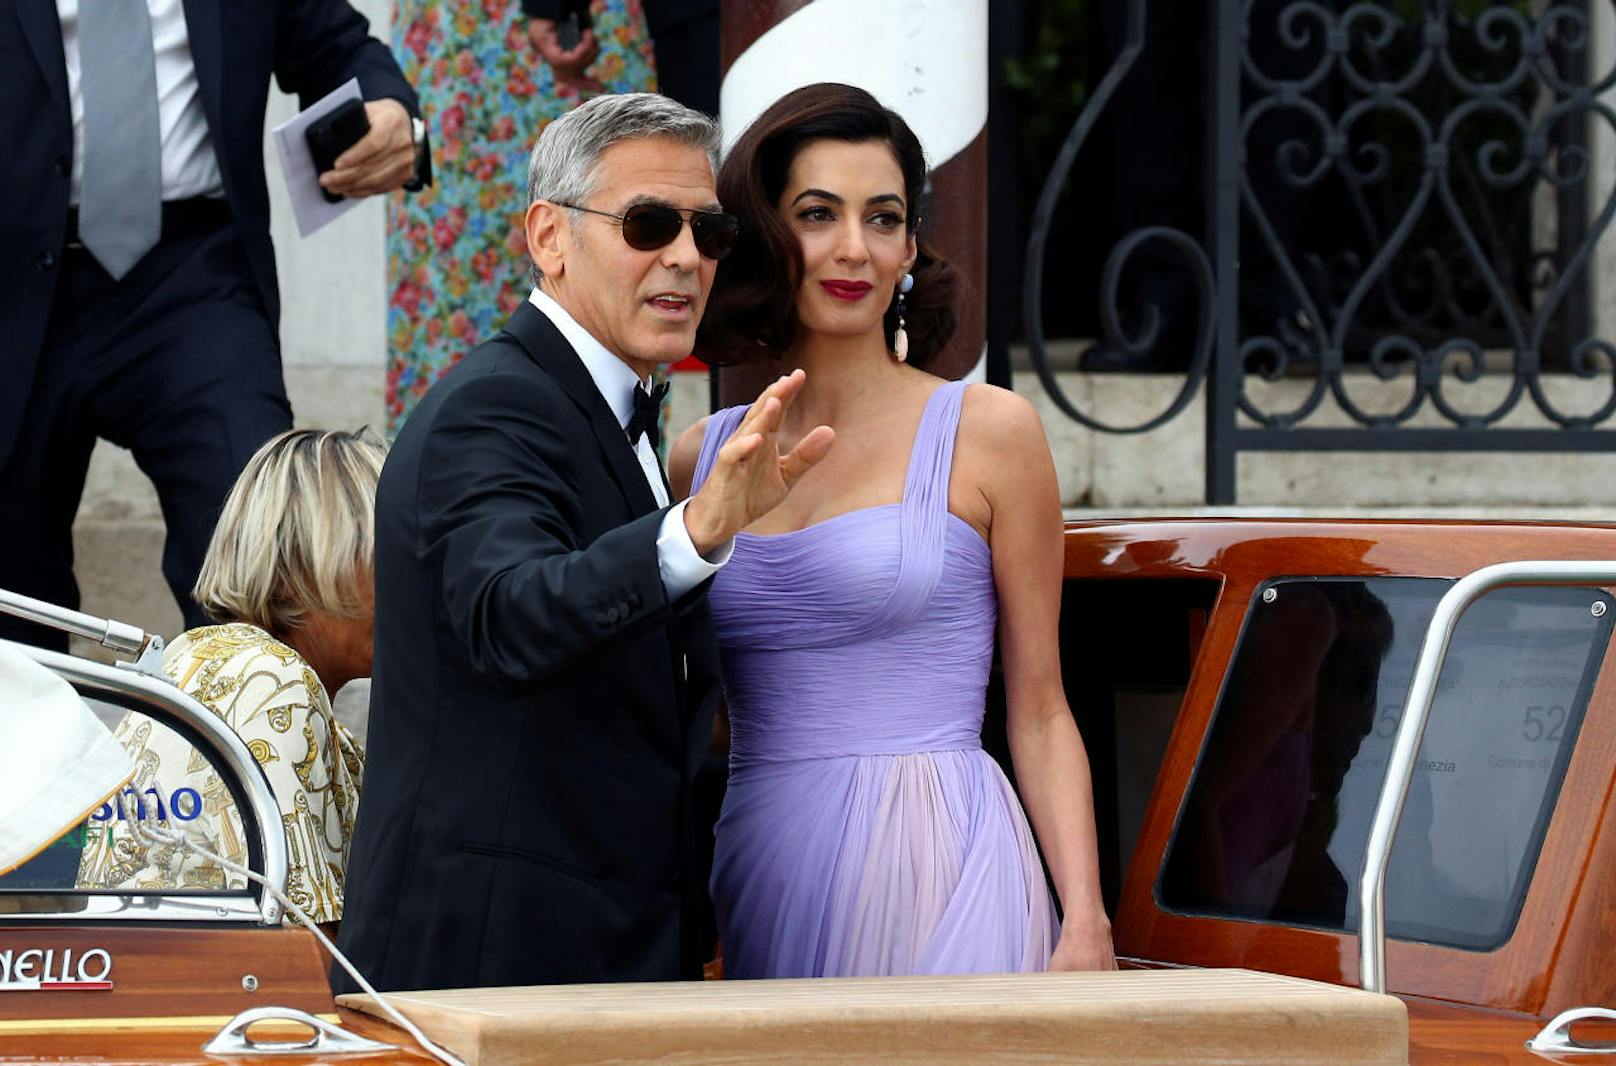 George Clooney und seine Frau Amal